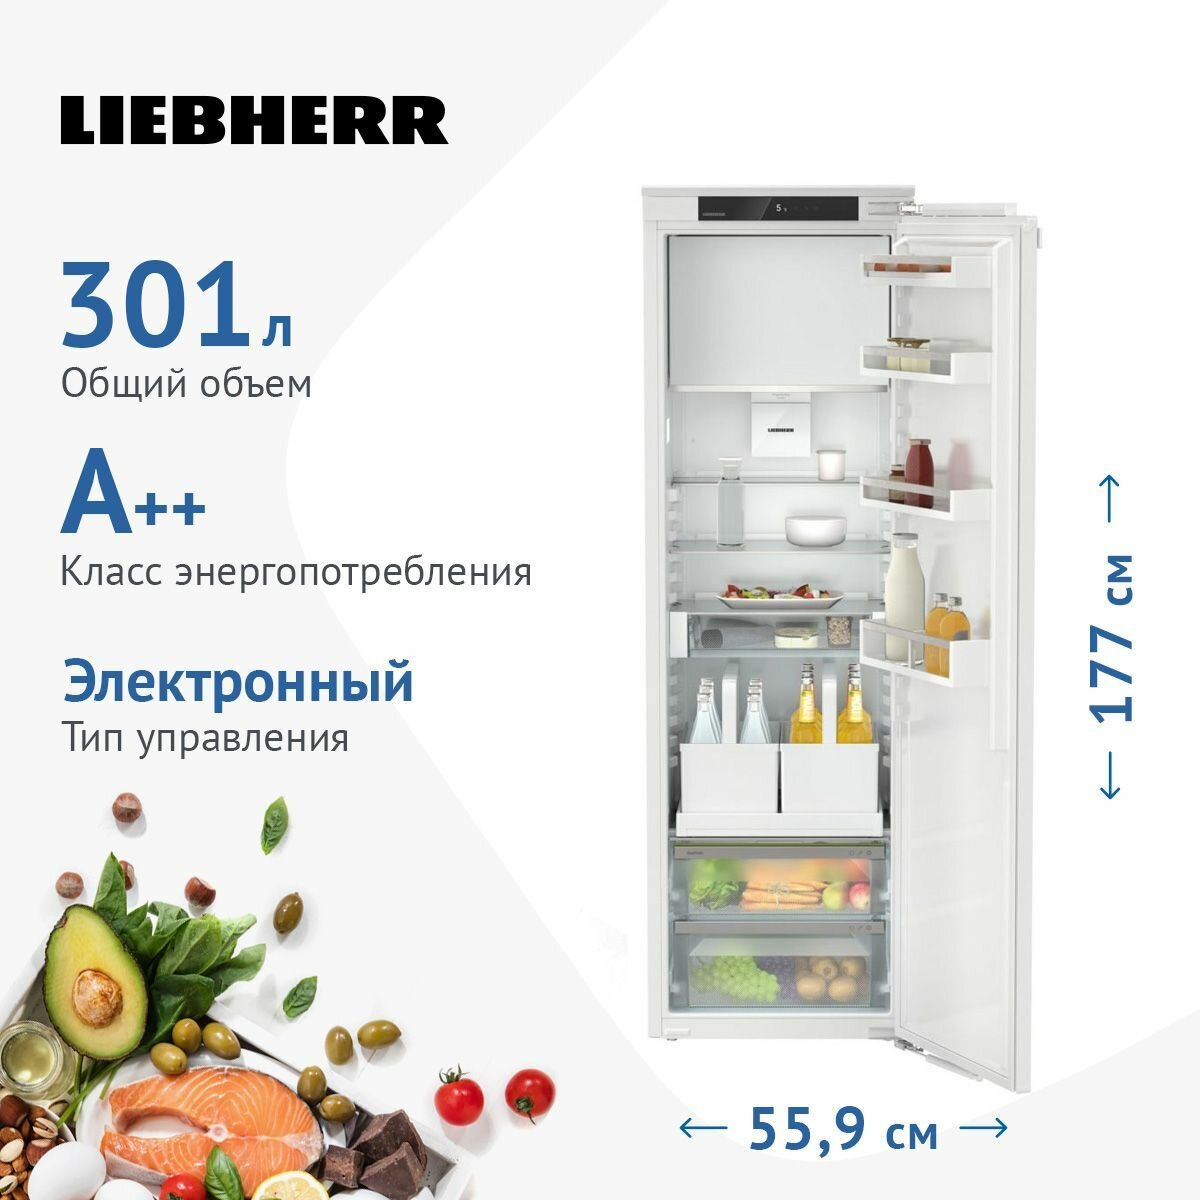 Встраиваемый однокамерный холодильник Liebherr IRDe 5121-20